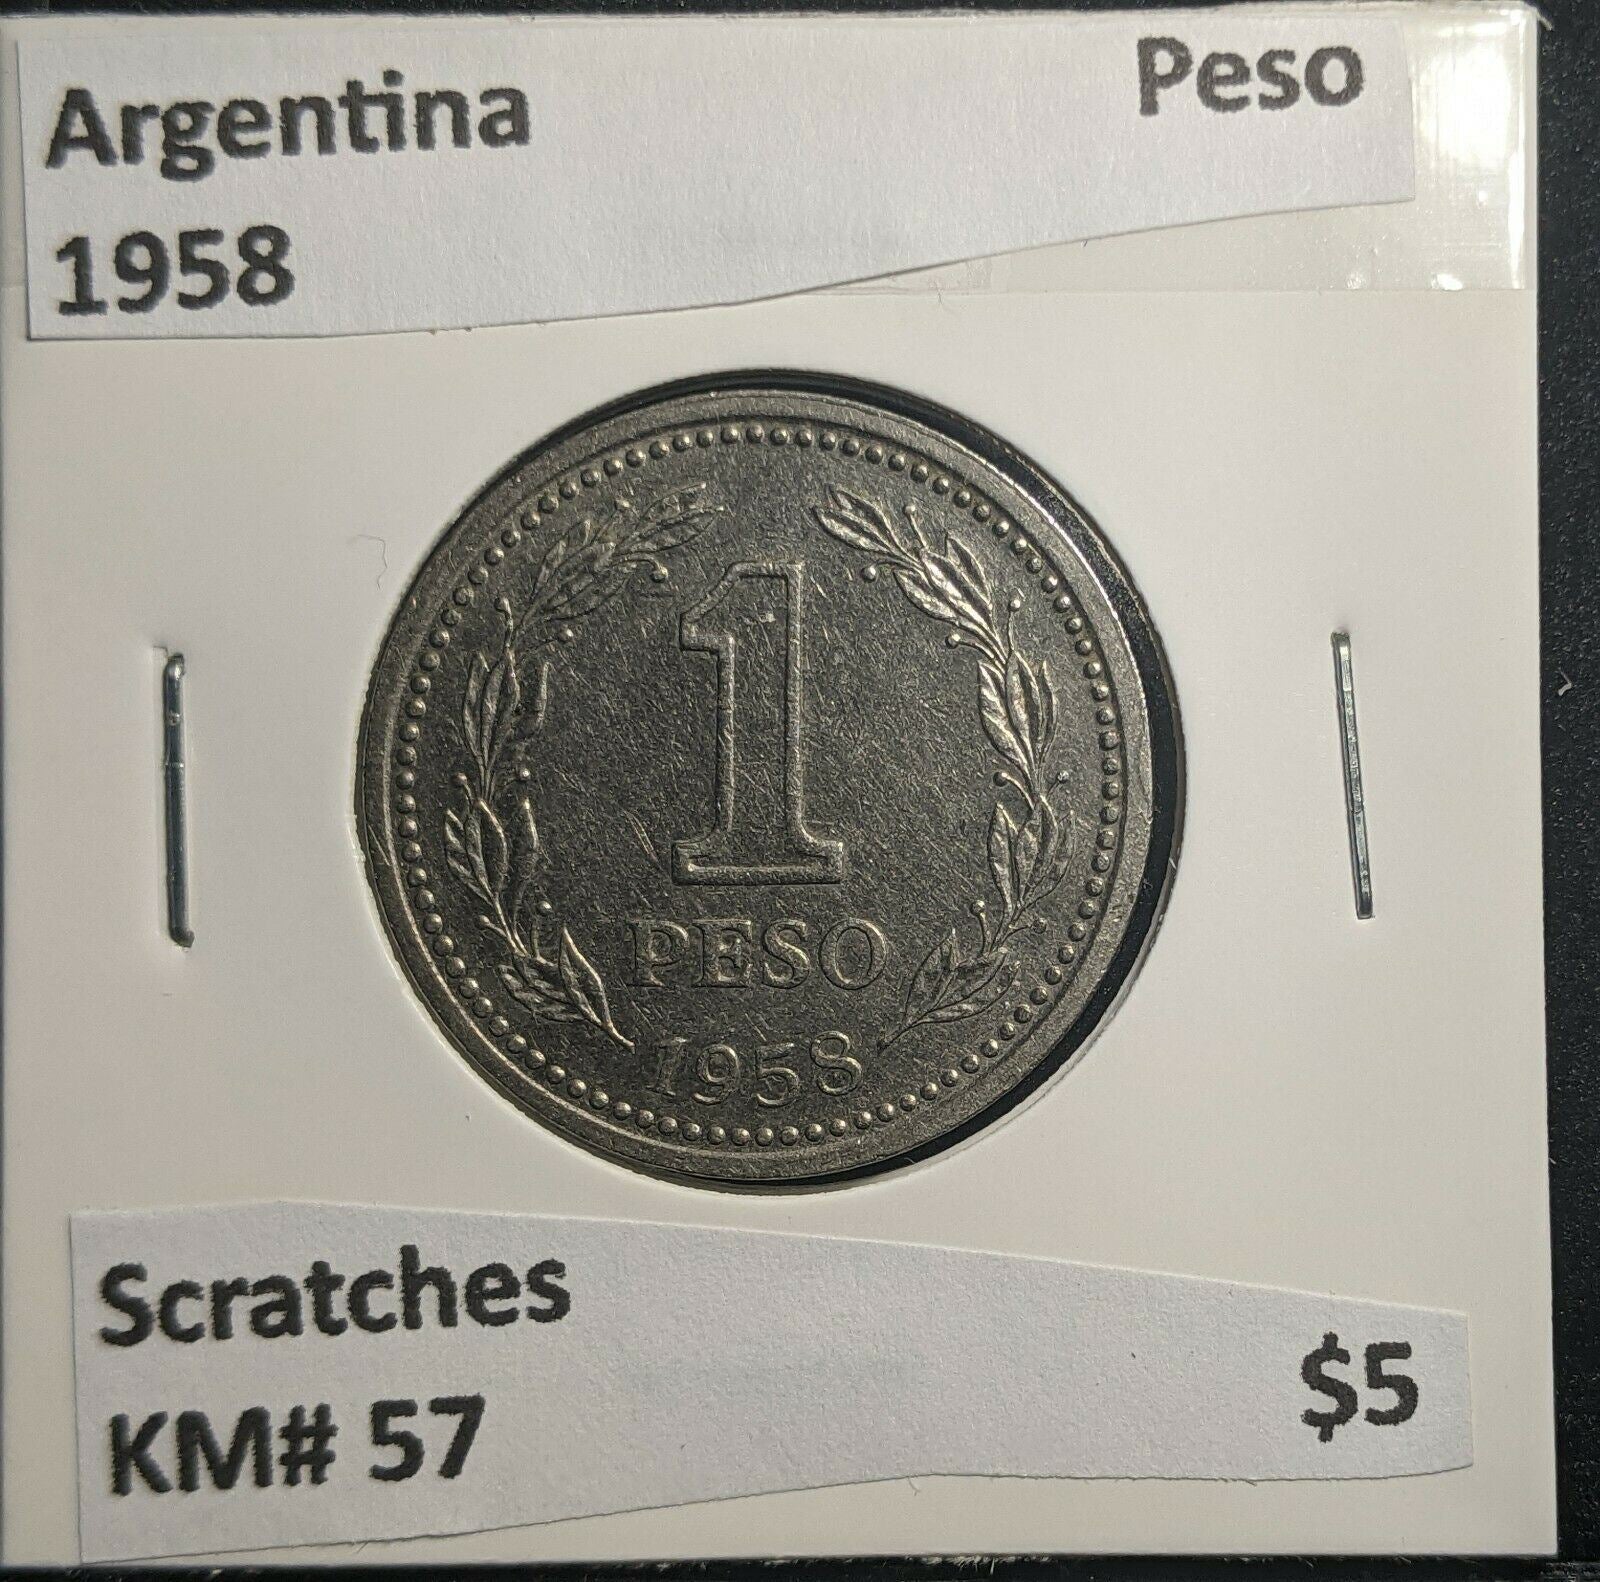 Argentina 1958 Peso KM# 57 Scratches #927 A1